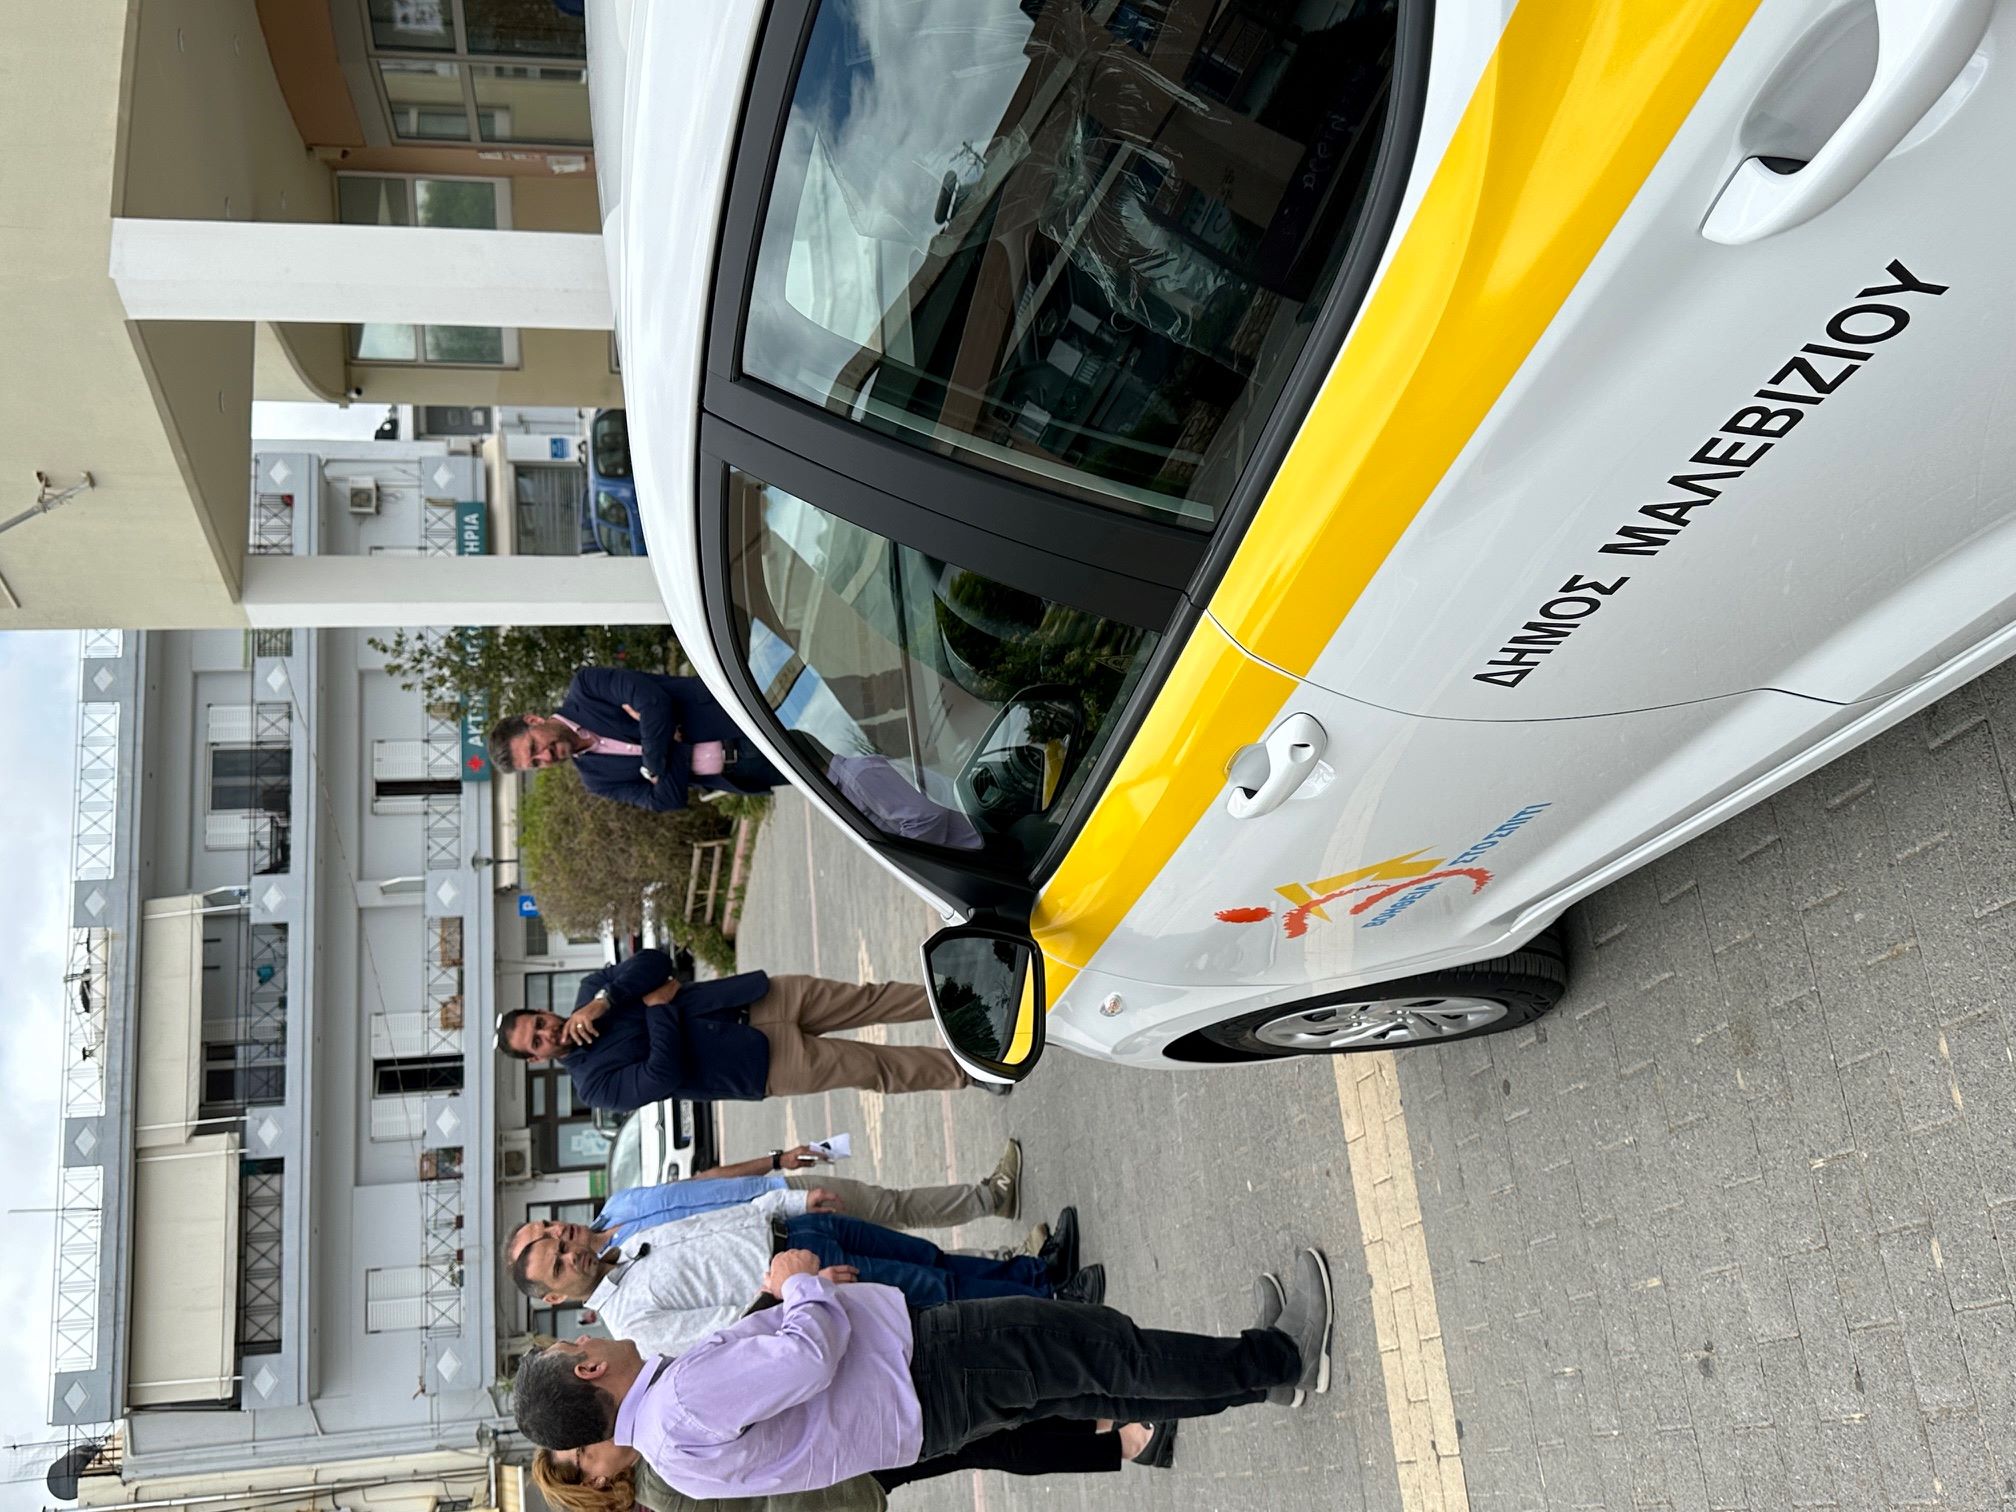 Ο Δήμος Μαλεβιζίου παρέλαβε δύο νέα οχήματα για τις ανάγκες του προγράμματος του Βοήθεια στο Σπίτι